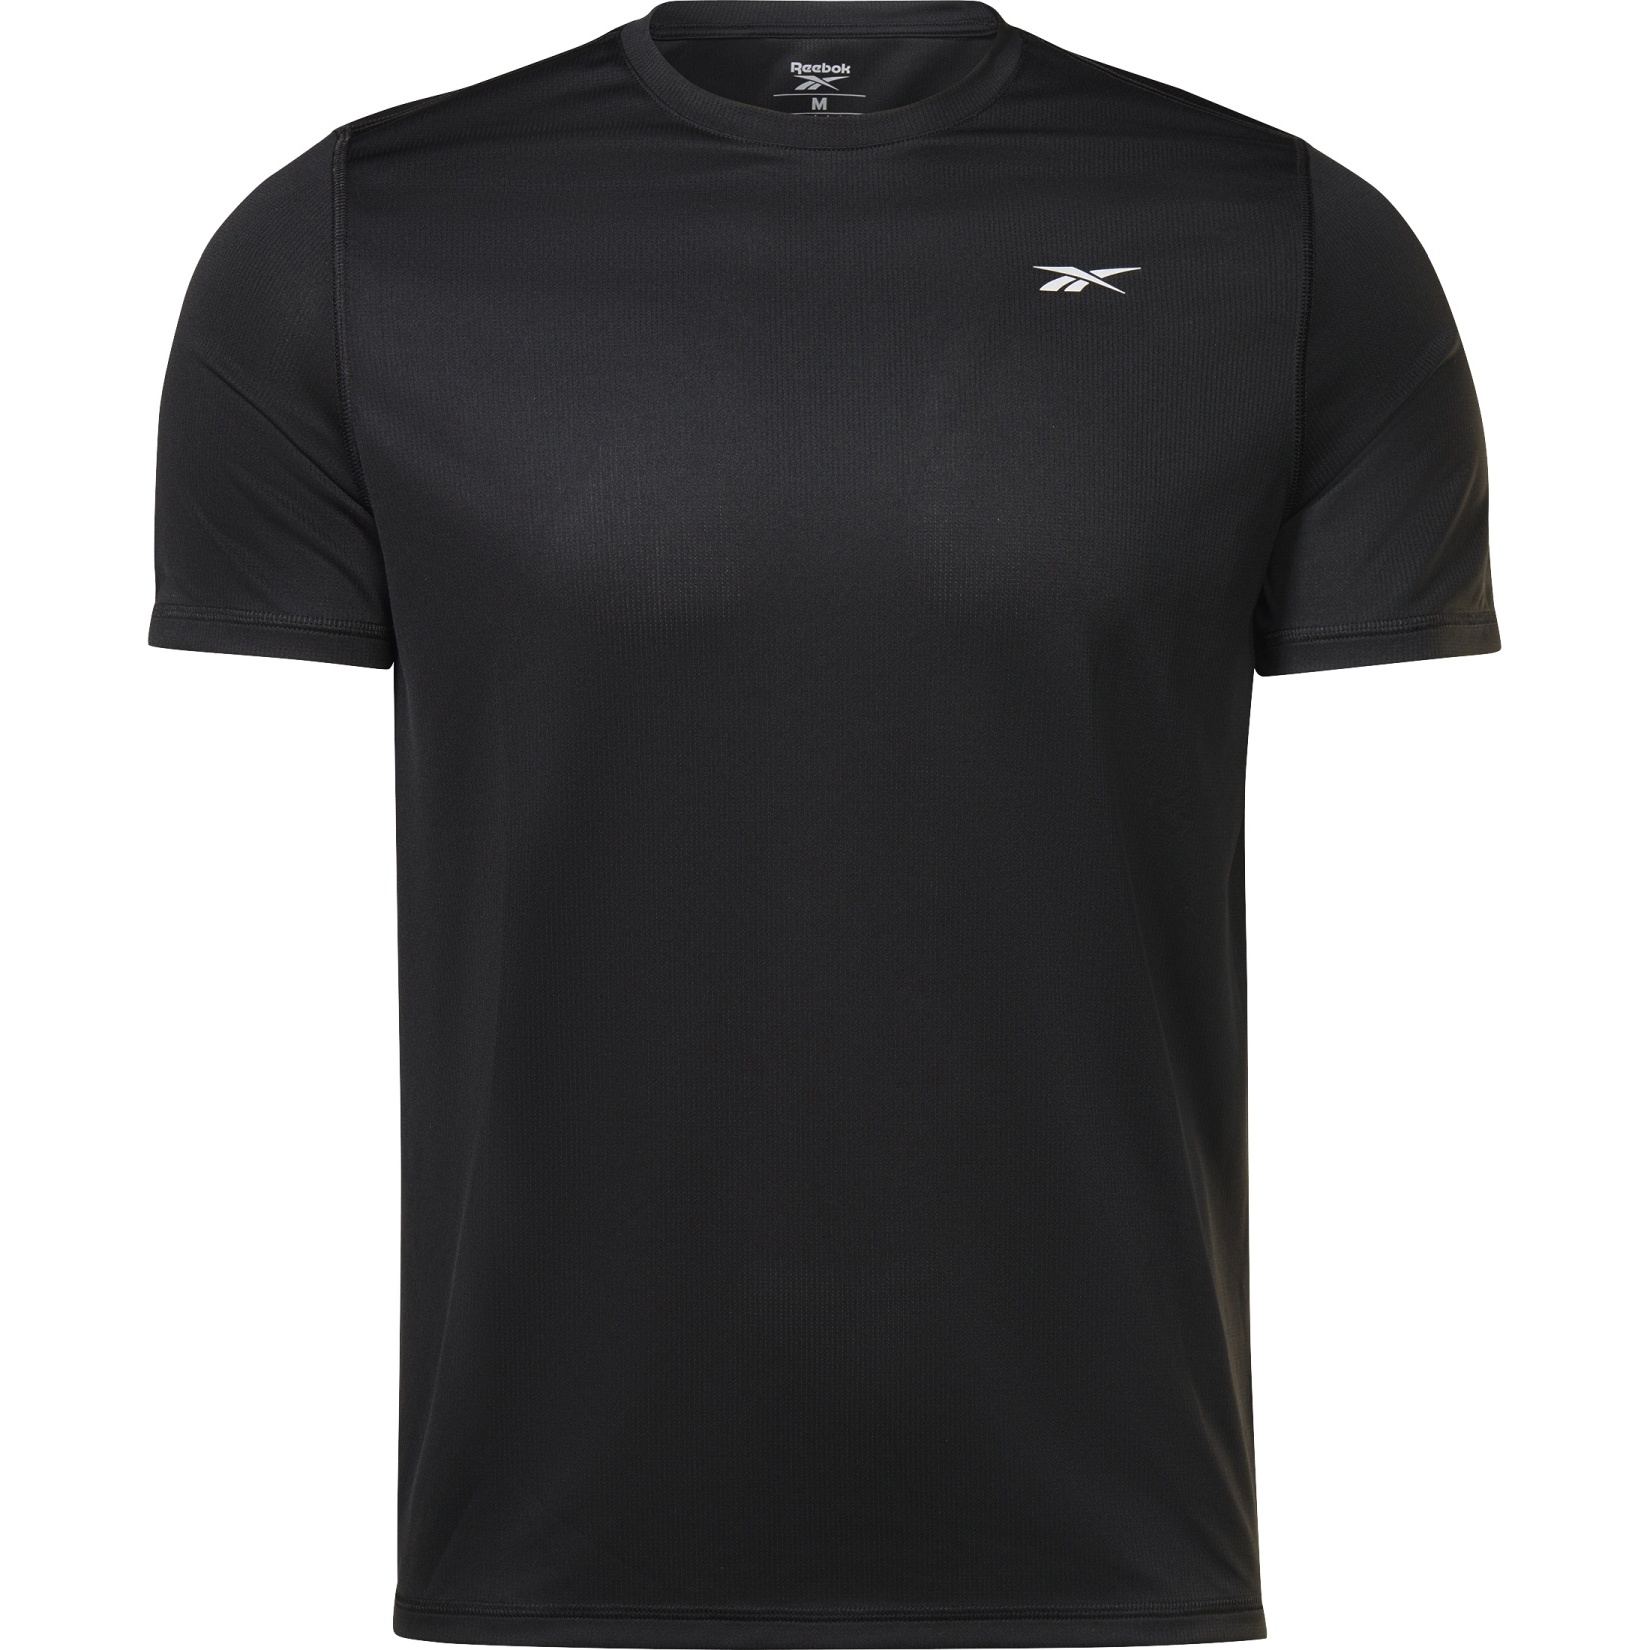 Produktbild von Reebok Running GFX T-Shirt - schwarz